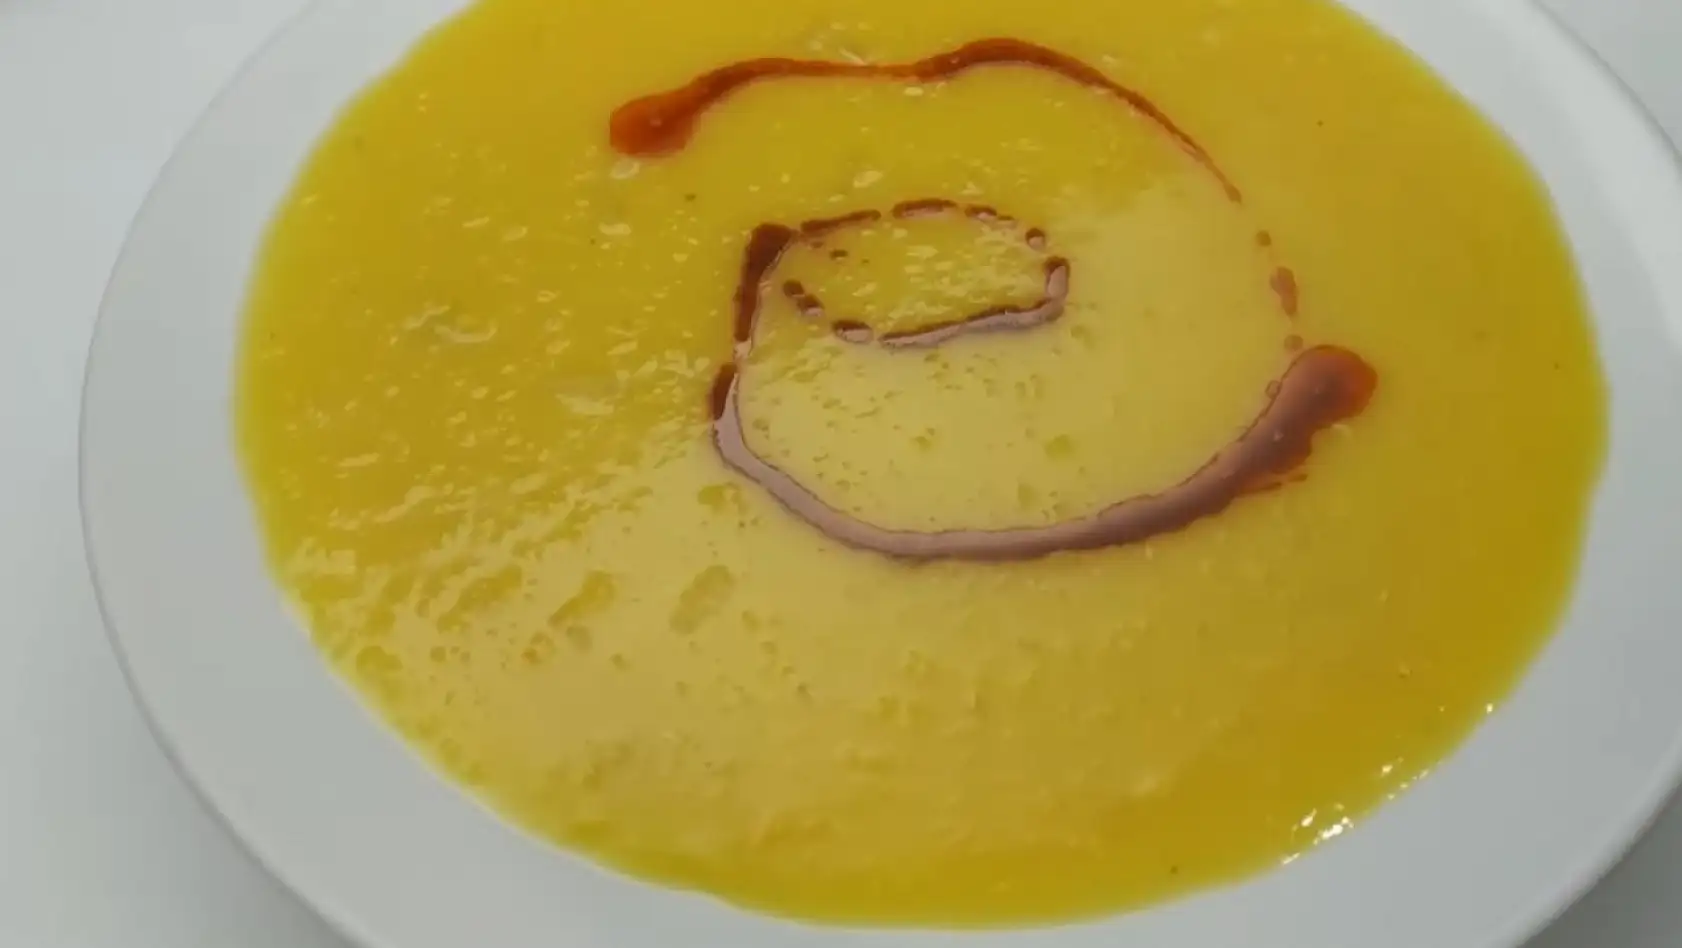 Elazığlı ev hanımları mercimek çorbasını böyle yapıyormuş. Lokantada yapılanla birebir aynı tadı veriyor